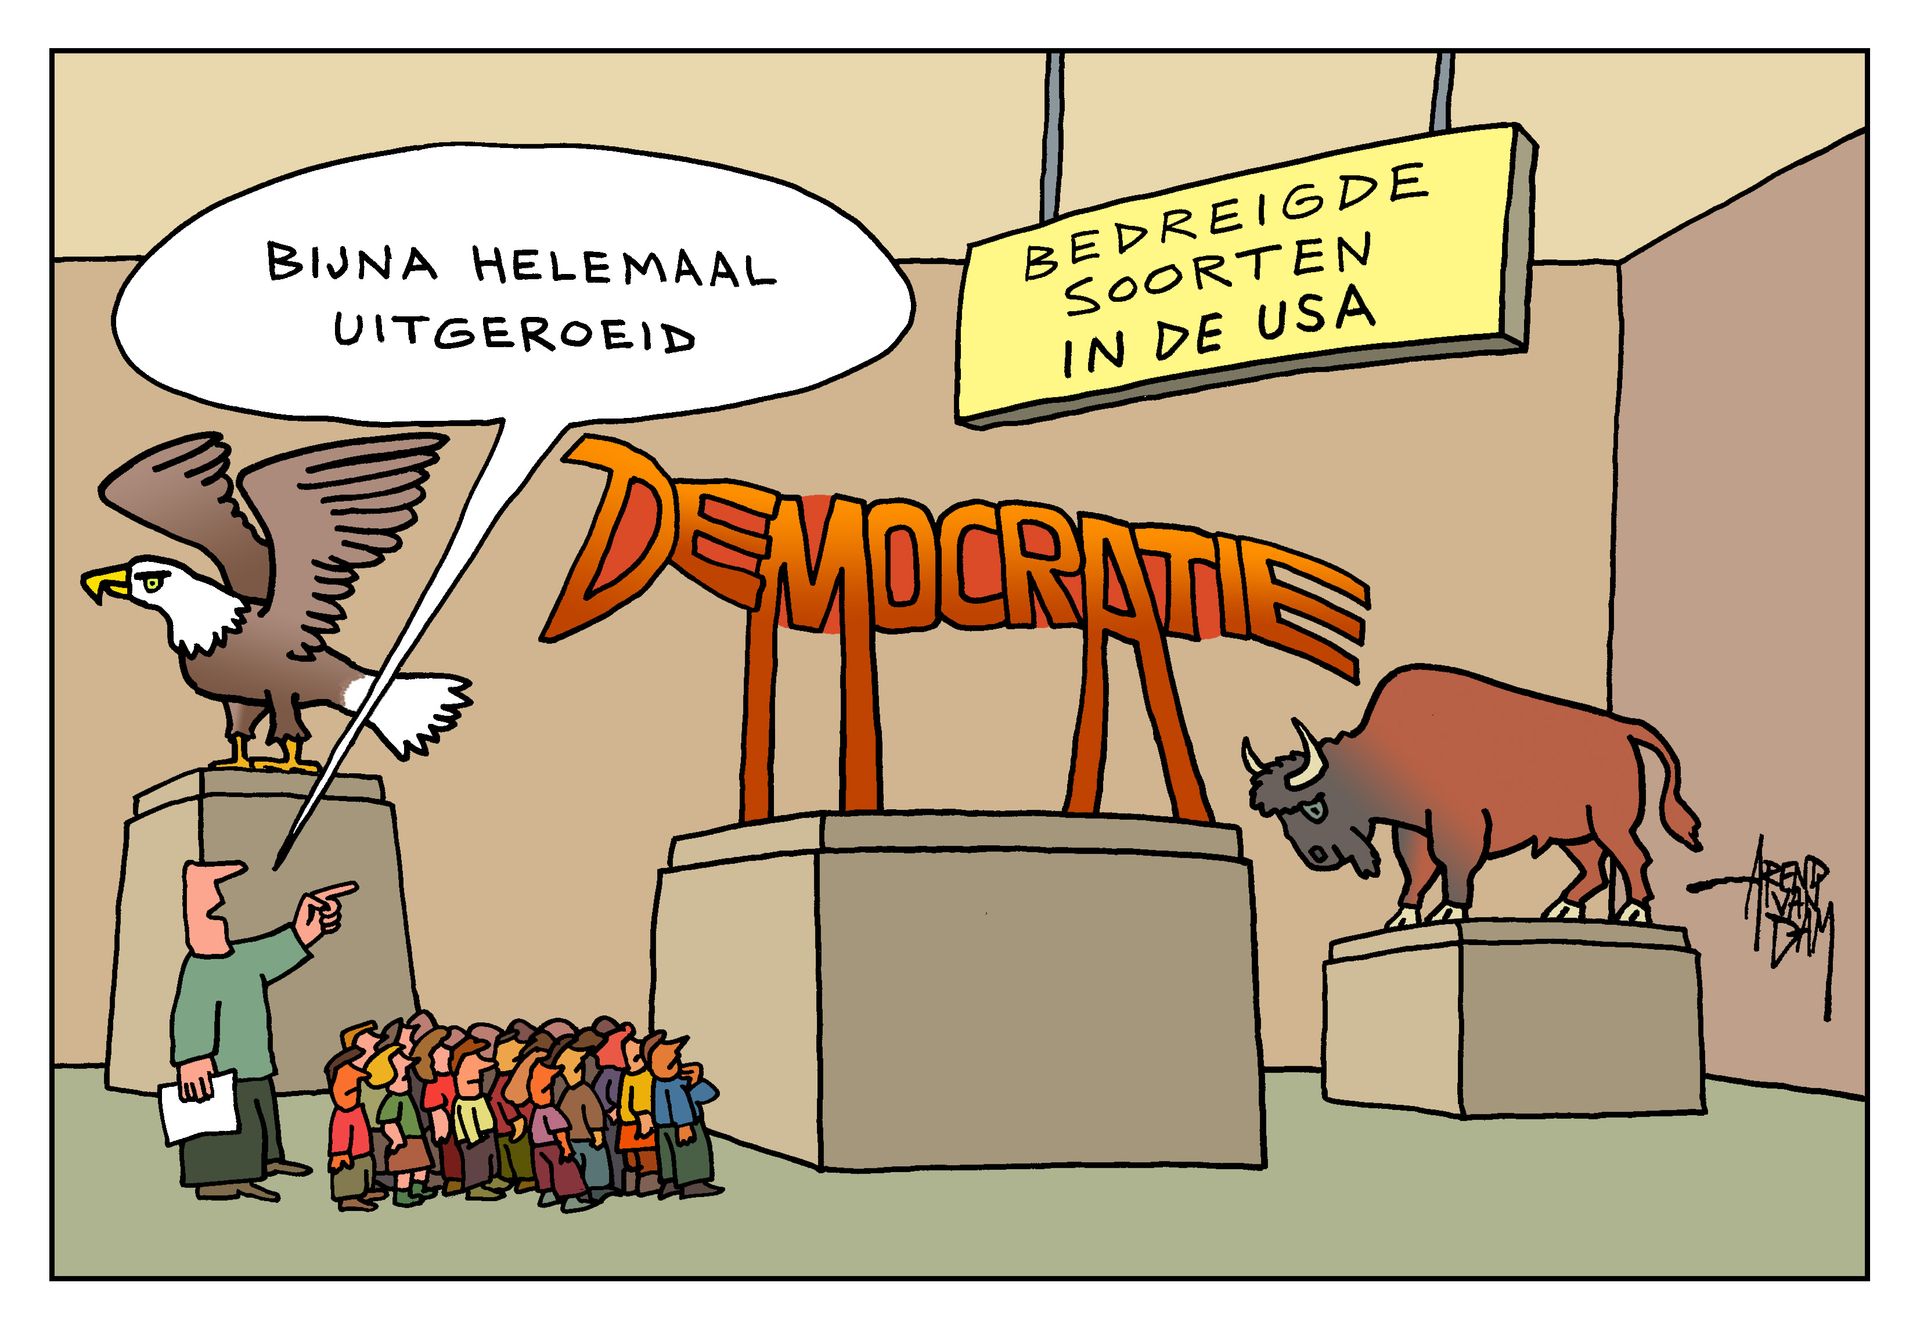 DemocratieBedreigd(inUSA)